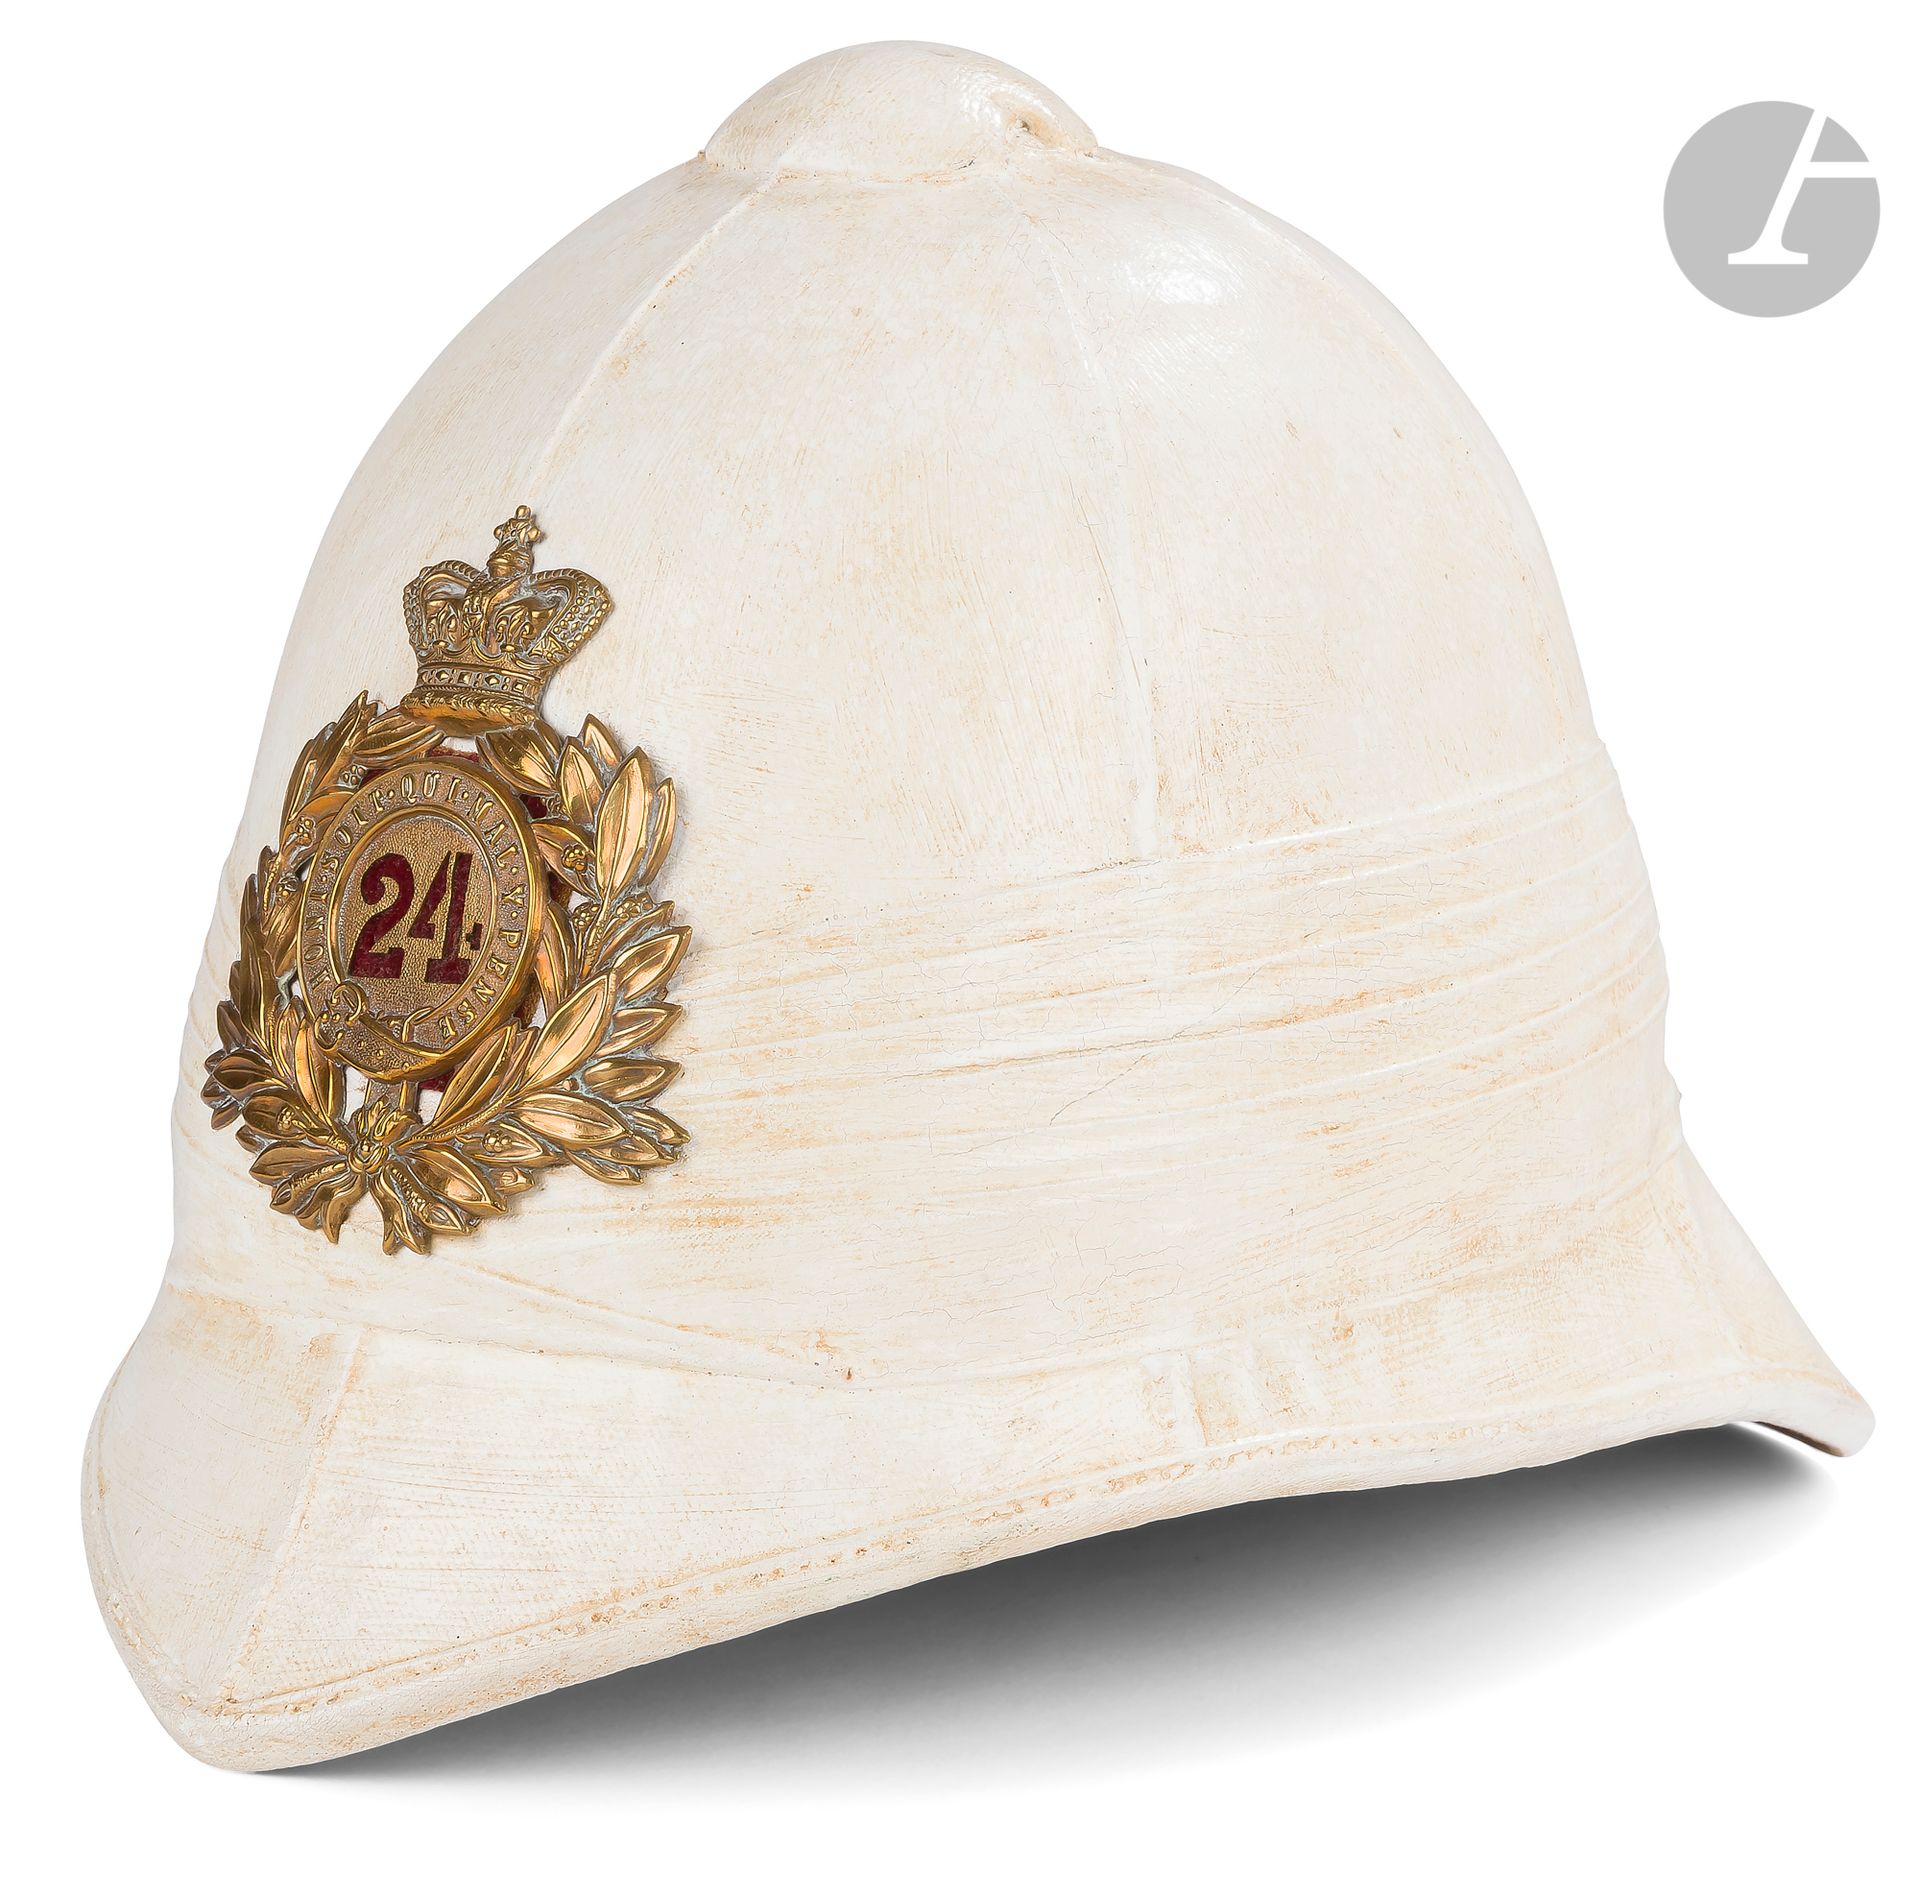 Null 英国殖民时期头盔 
在软木上覆盖有涂层帆布。有徽章。 
符合十九世纪末的品味。